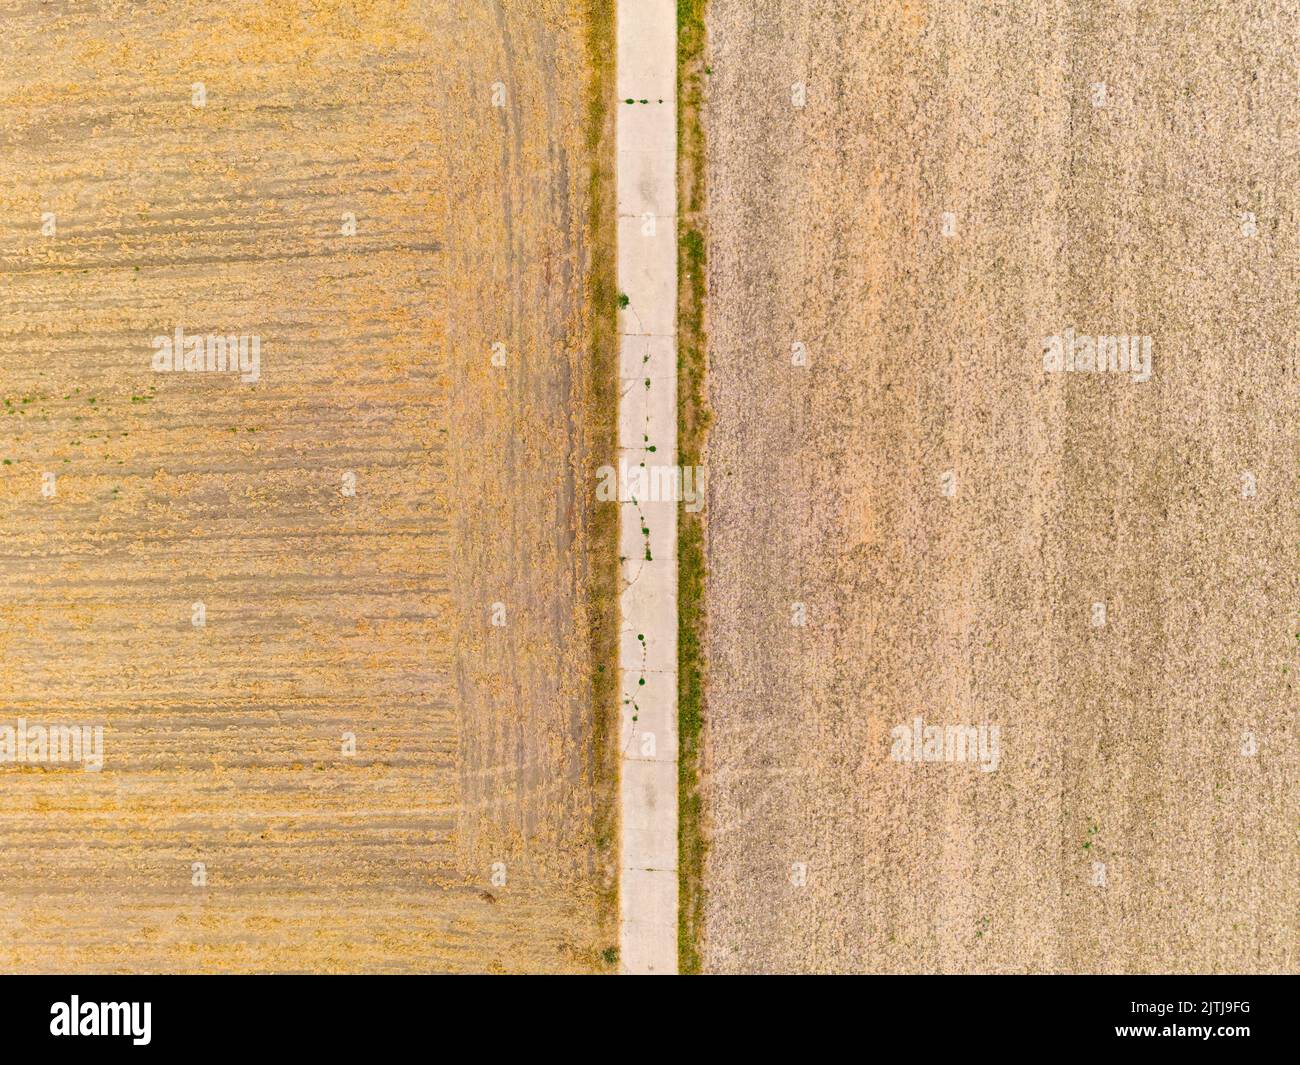 Luftaufnahme von Feldern nach Hitze und Regenarmut im Sommer der Klimakrise in Europa Stock Photo